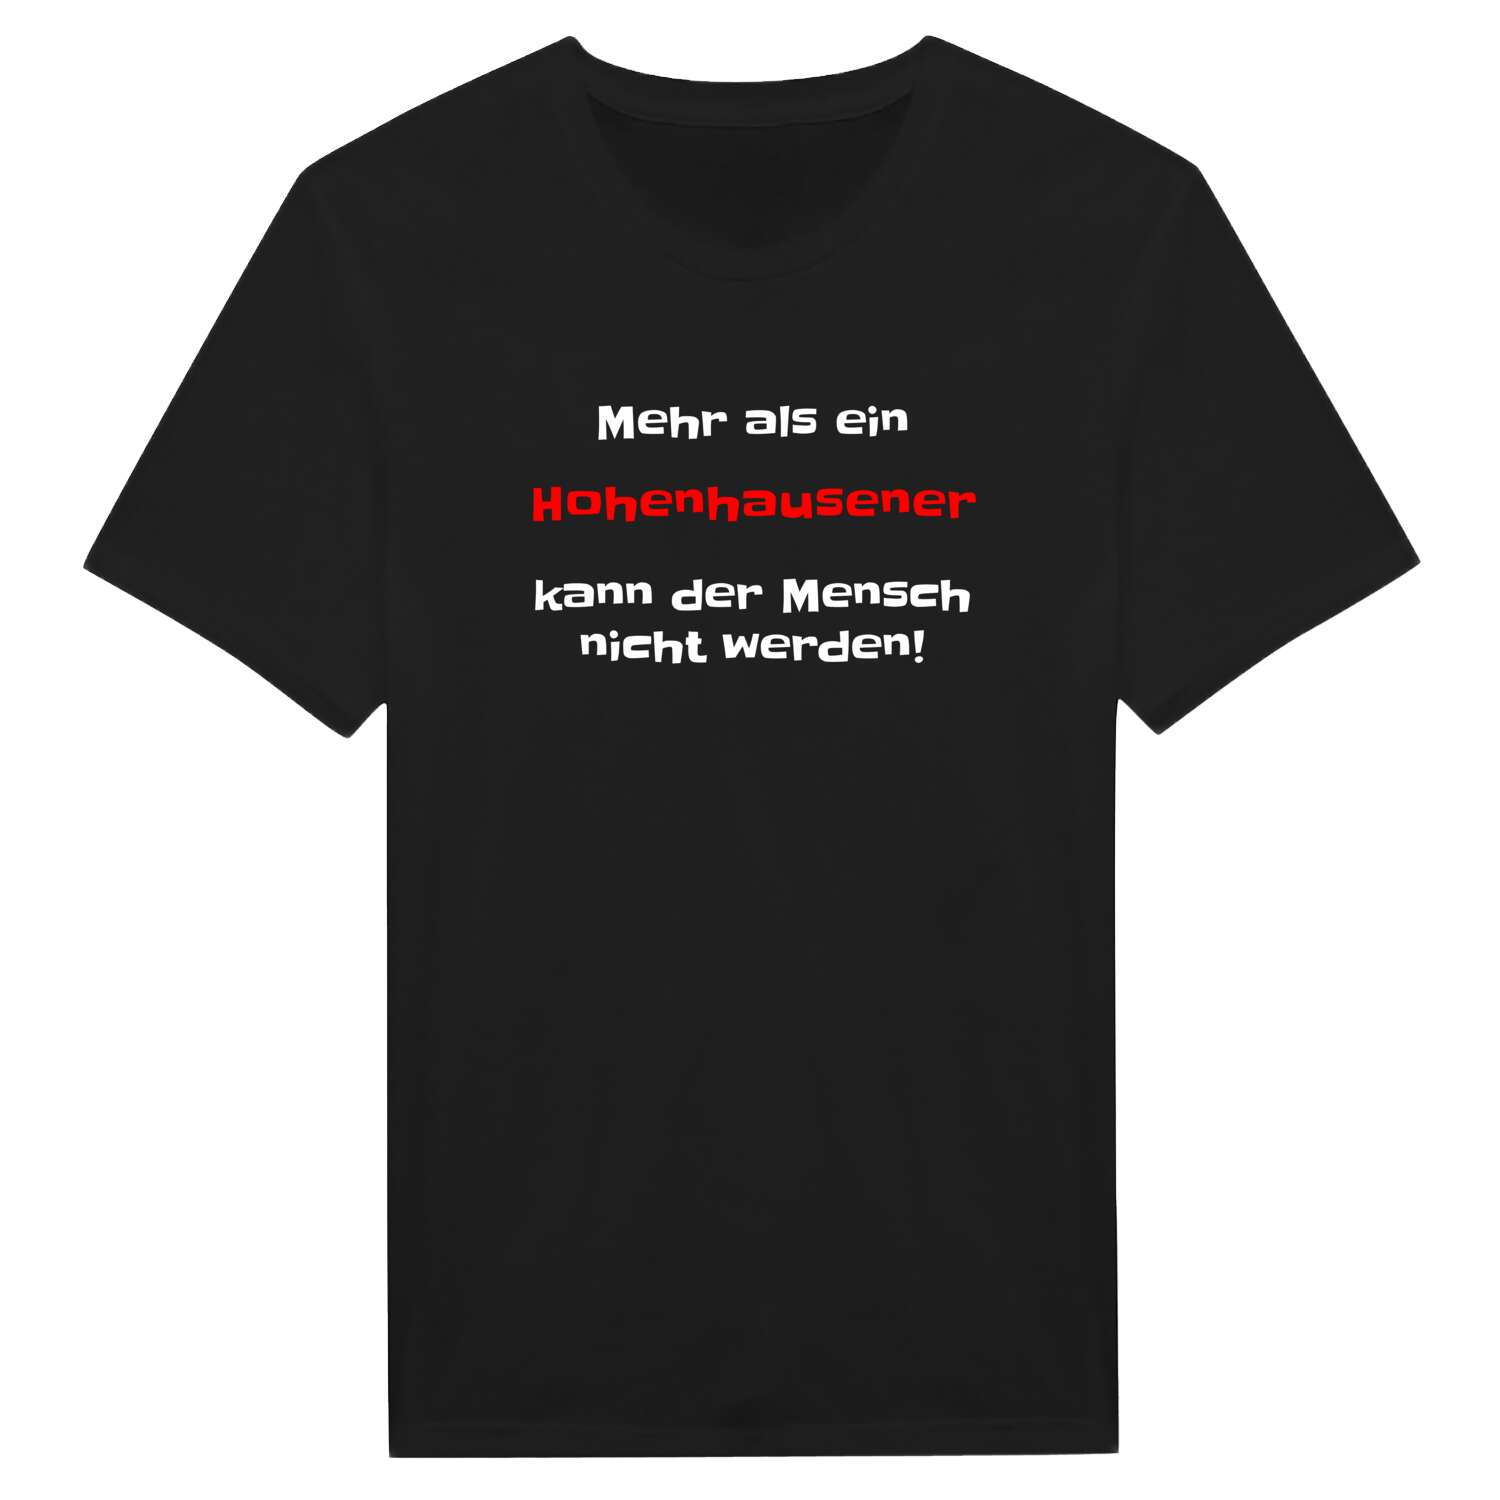 Hohenhausen T-Shirt »Mehr als ein«